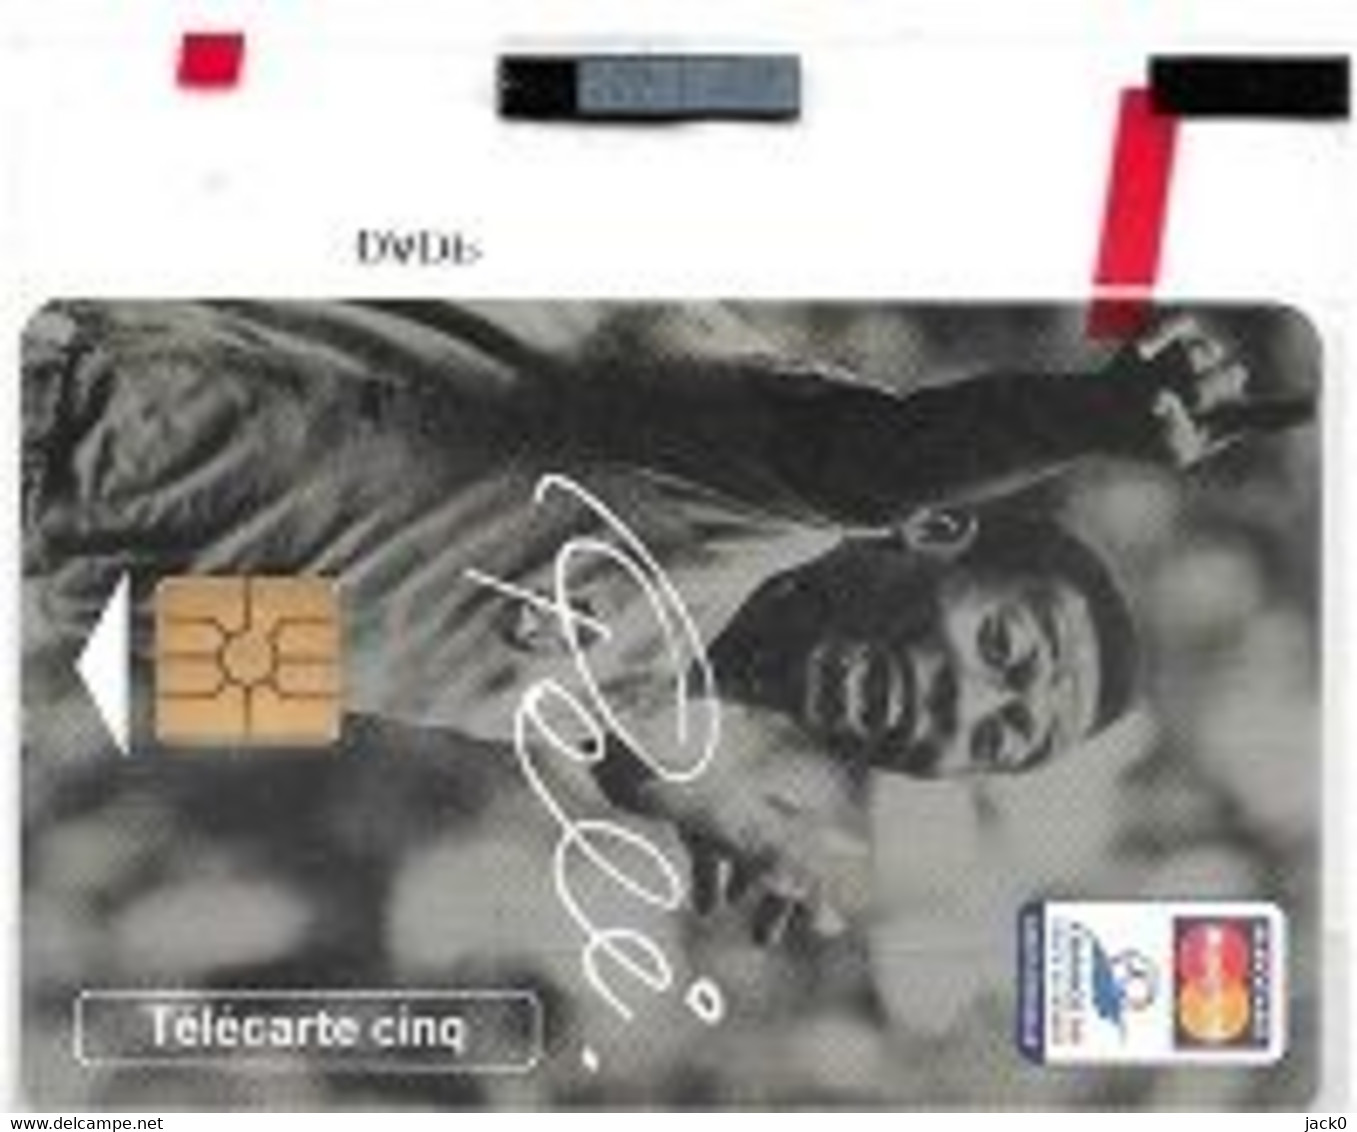 Télécarte  N S B  5 U,Sport  Foot-ball  Joueur  PELE - MASTERCARD, GN 447, 14 500 Ex, 06 / 98 - Telefoonkaarten Voor Particulieren